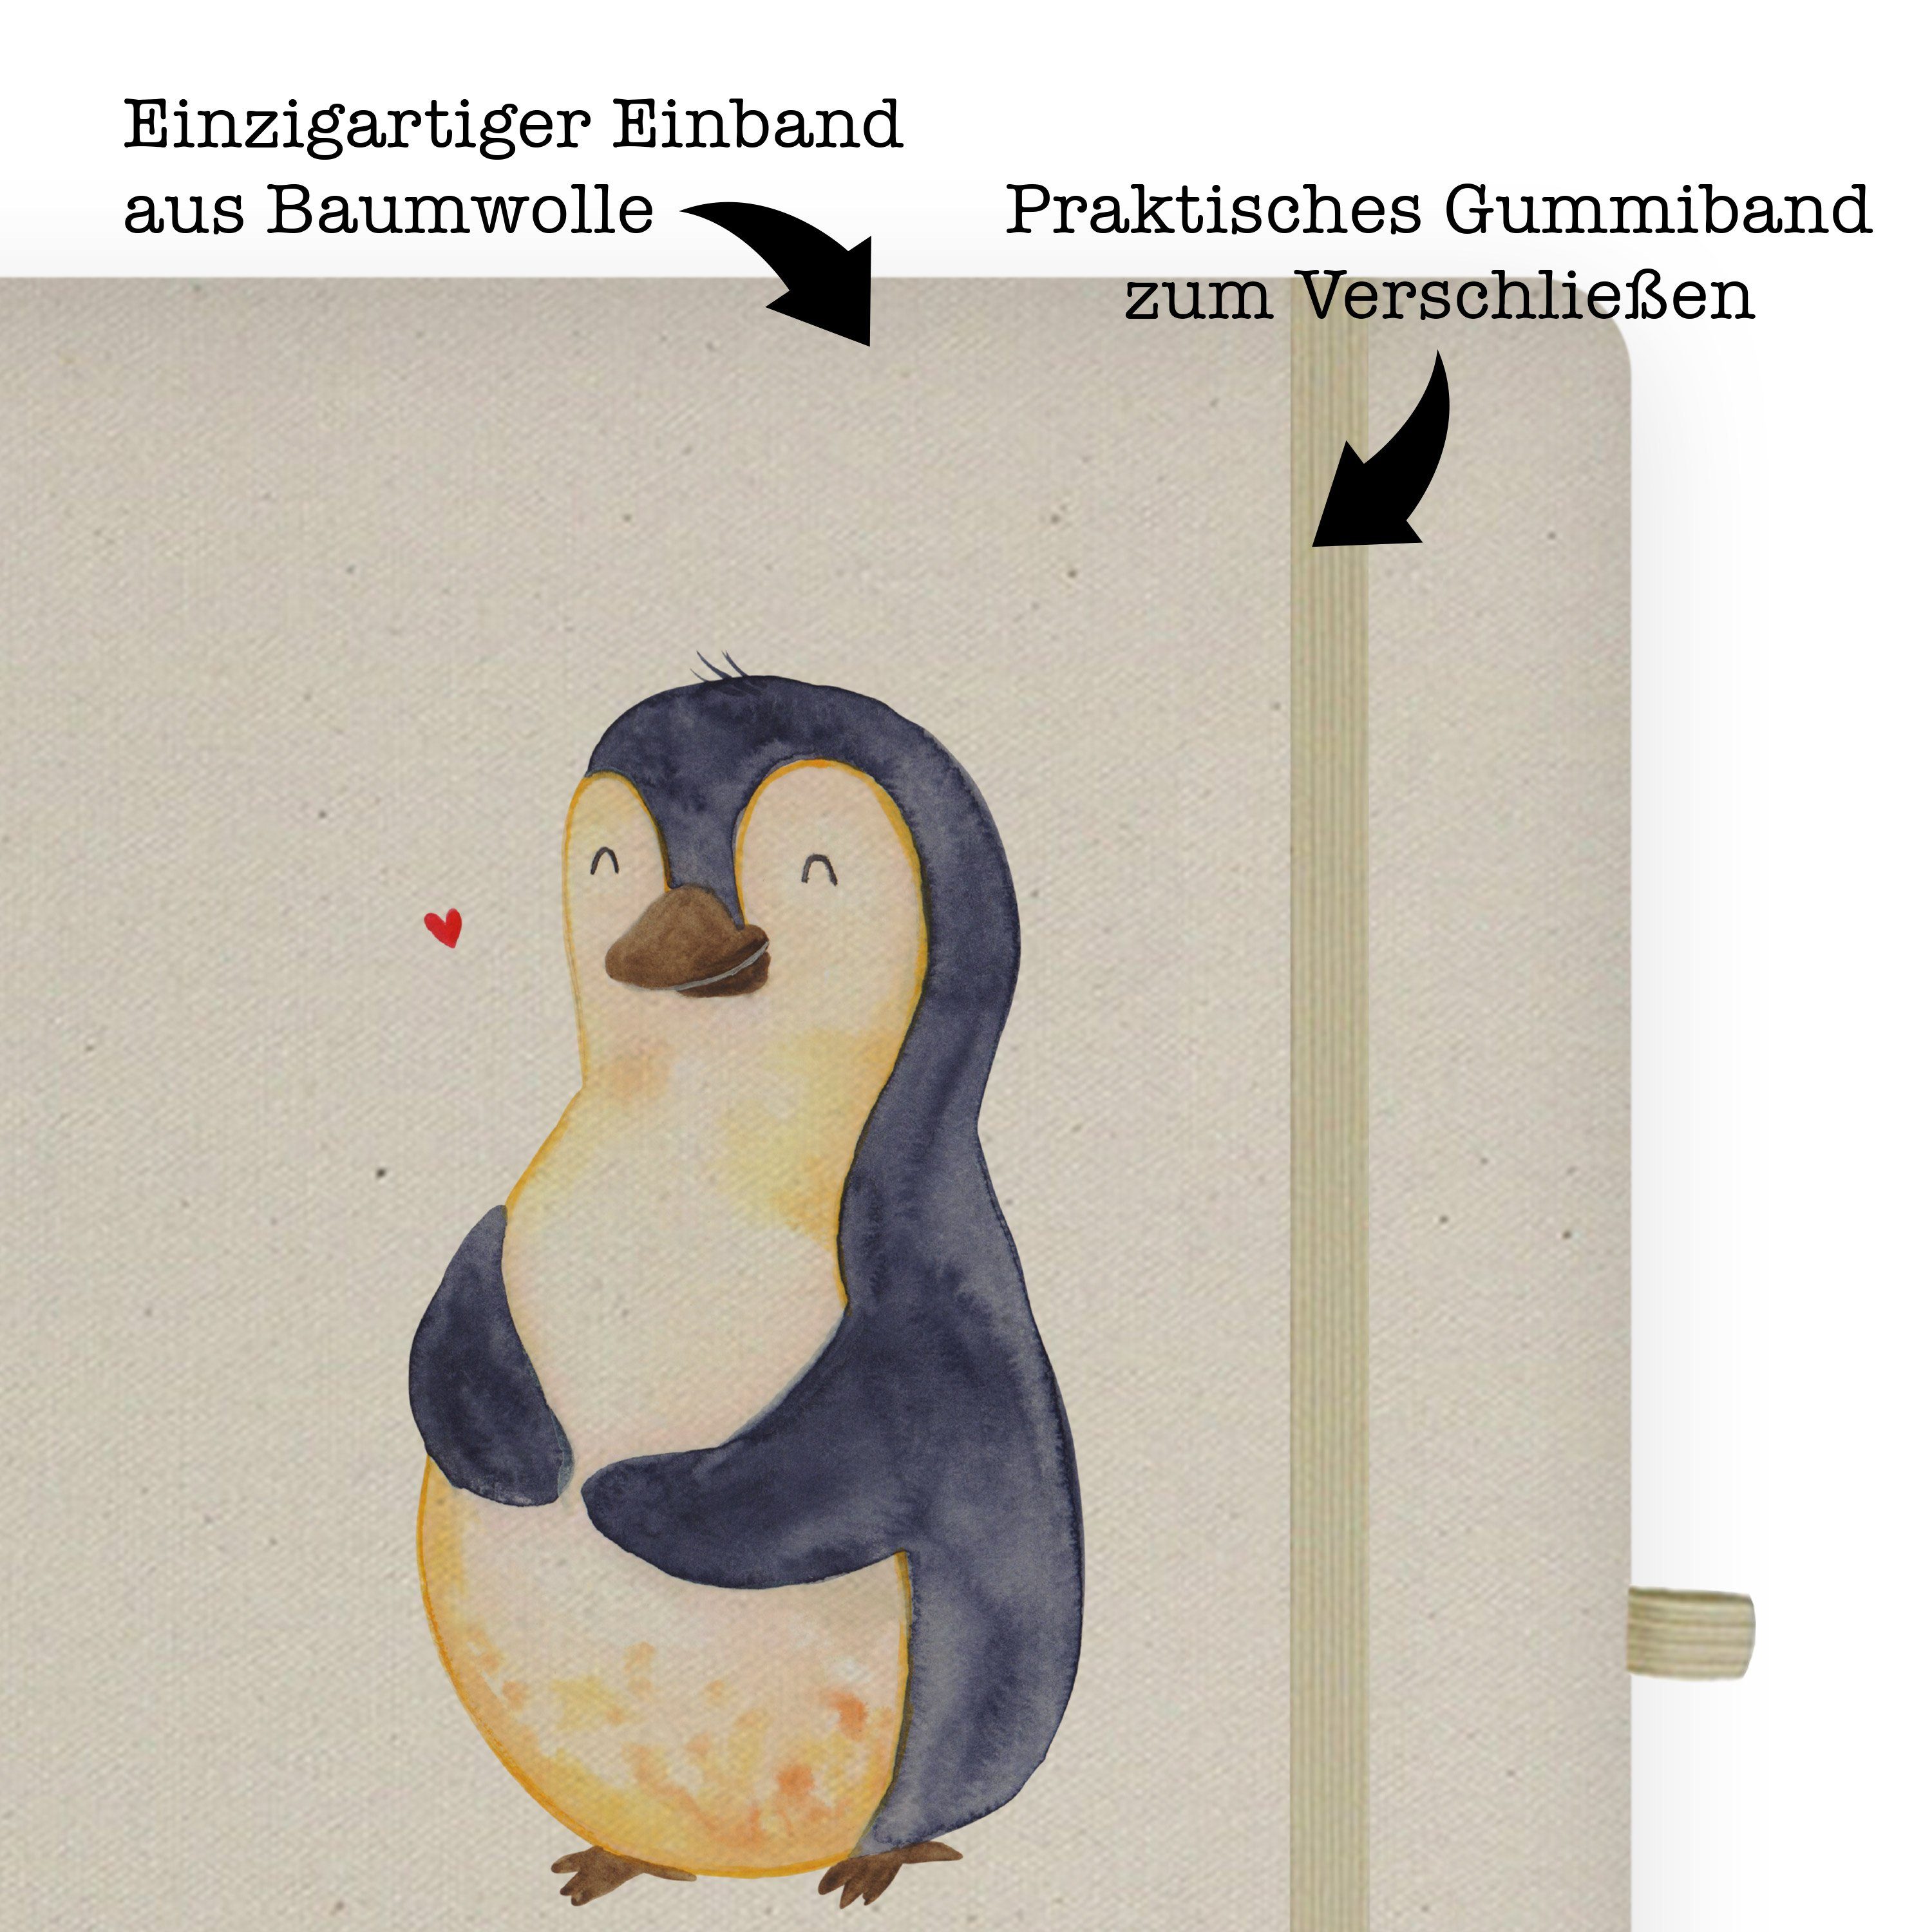 Mr. & Mrs. Panda Notizbuch Tagebuch, Notizheft, Diät & Geschenk, glücklich Panda Pinguin Mr. - Transparent Mrs. 